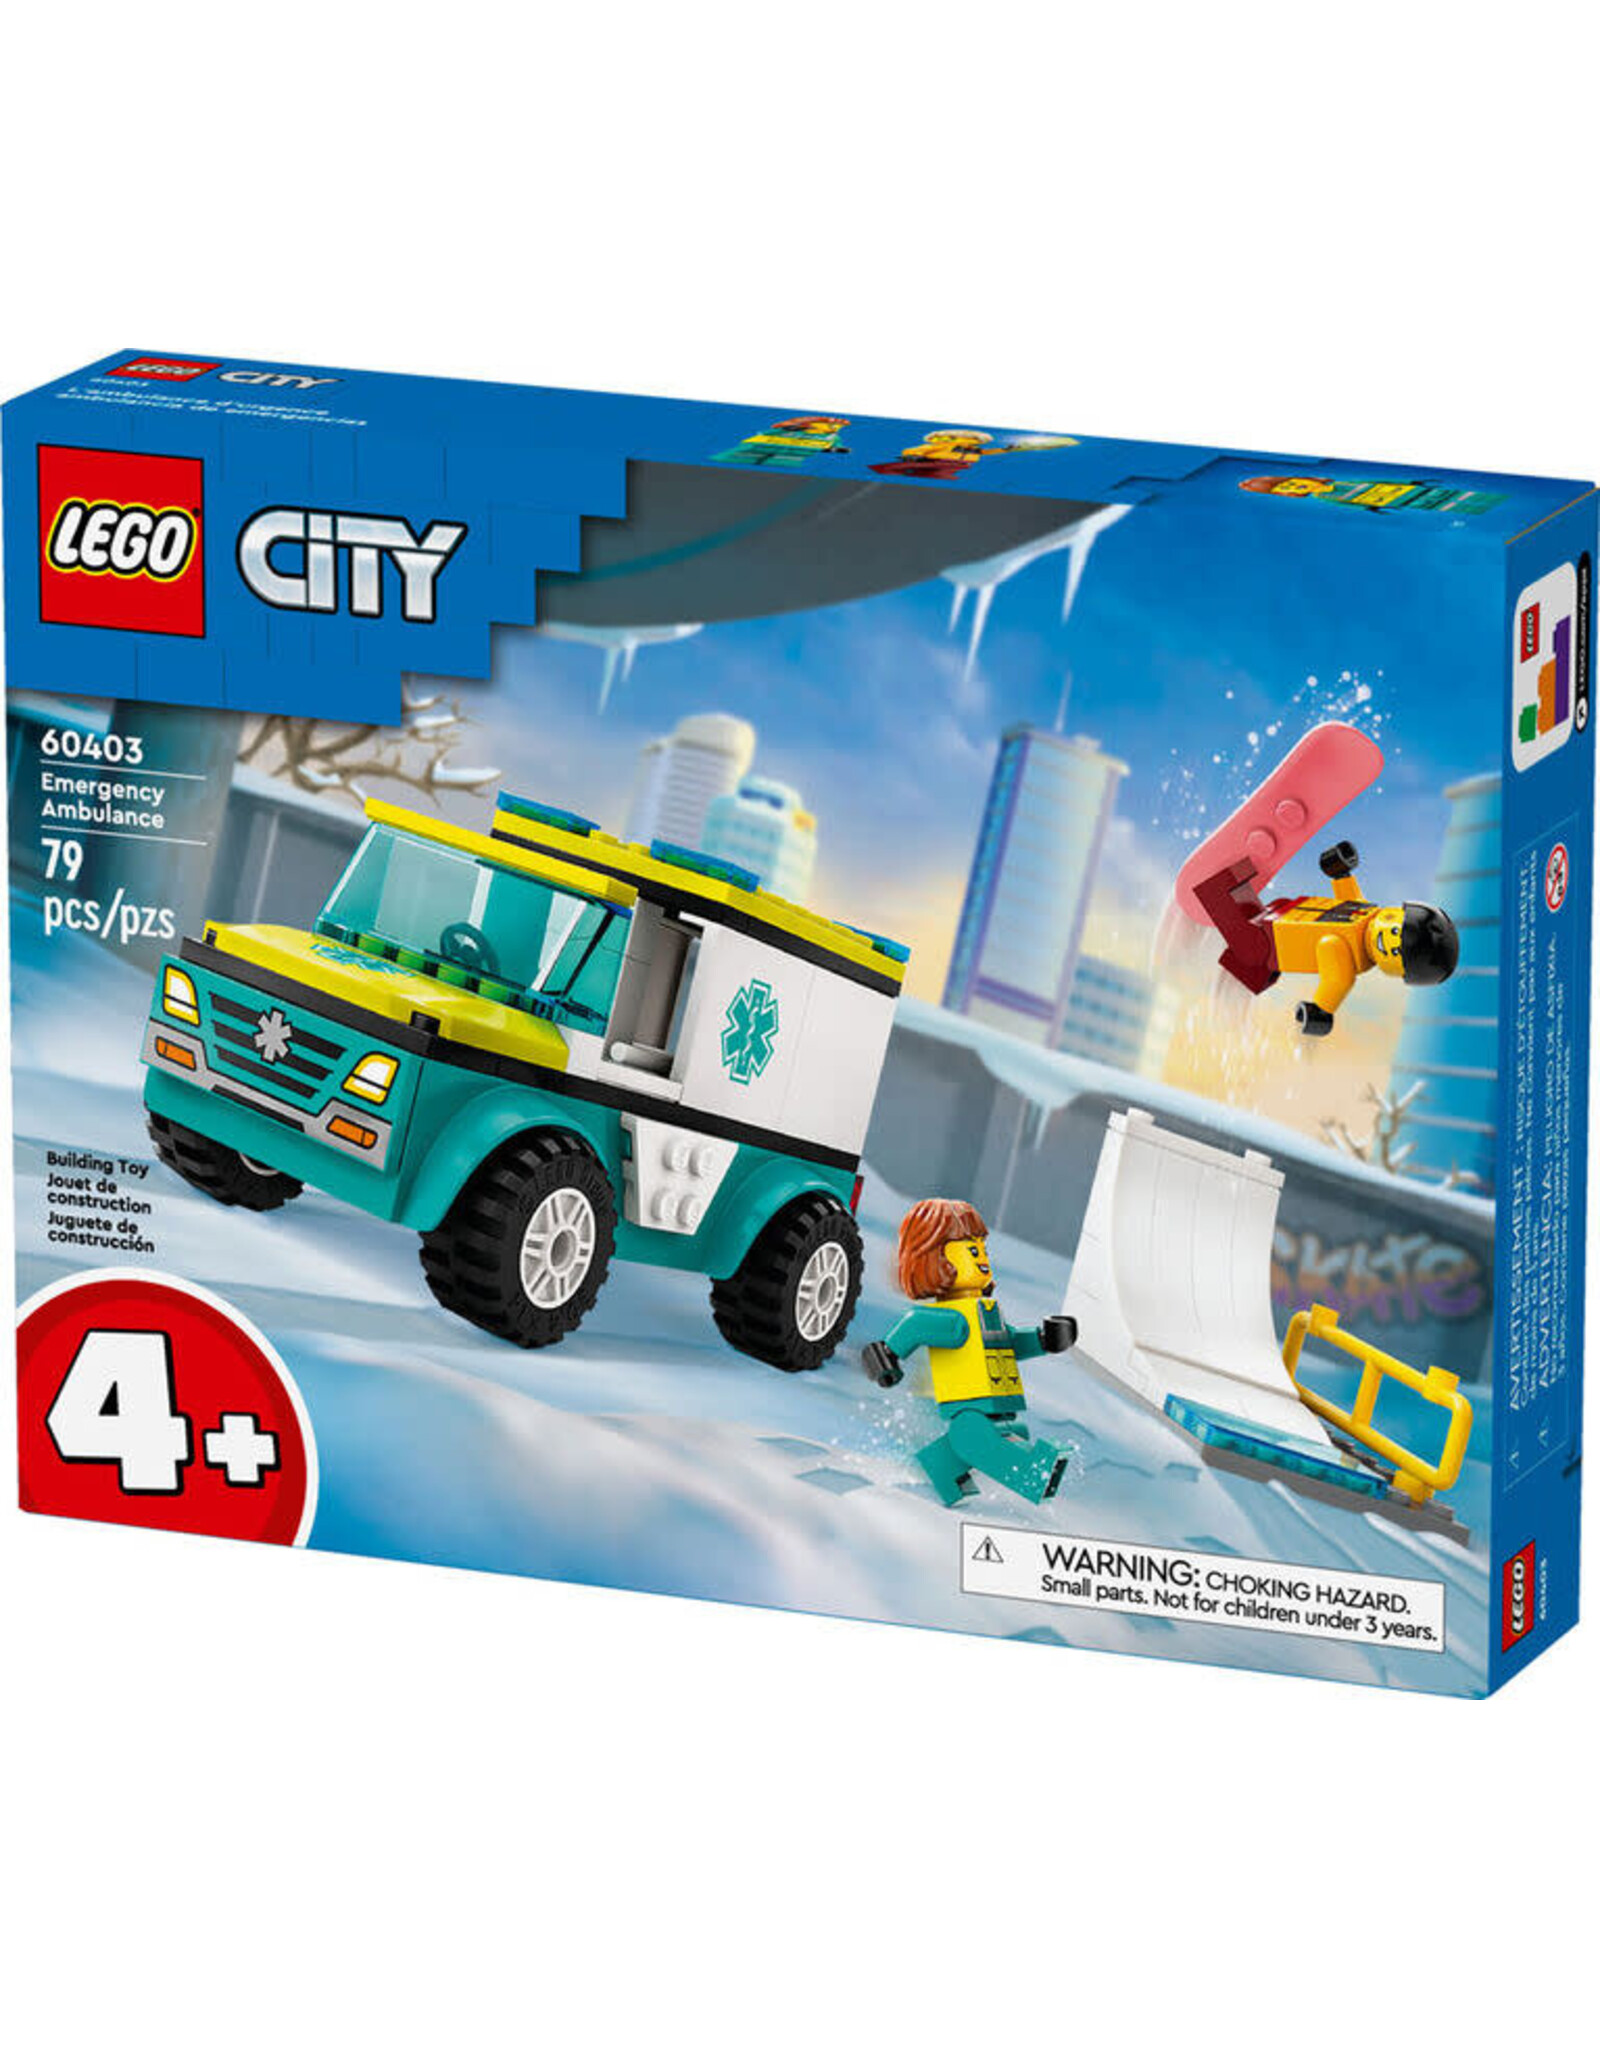 Lego Emergency Ambulance and Snowboarder